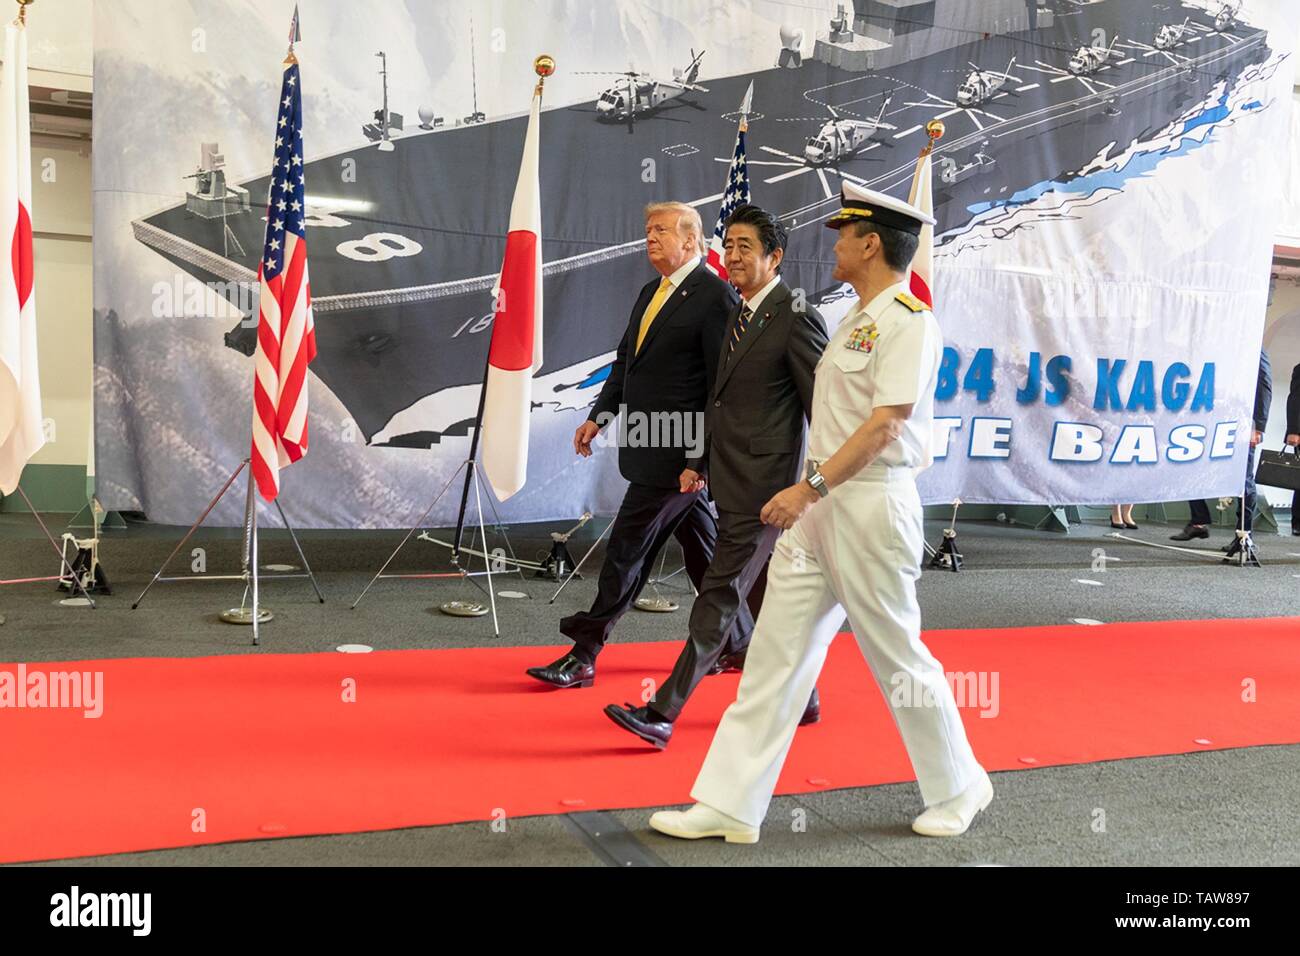 Us-Präsident Donald Trump kam vom japanischen Premierminister Shinzo Abe, Mitte, kommt an Bord der japanischen Self Defense Force Schiff der Marine JS Kaga am 28 Mai, 2019 in Yokosuka, Japan. Stockfoto